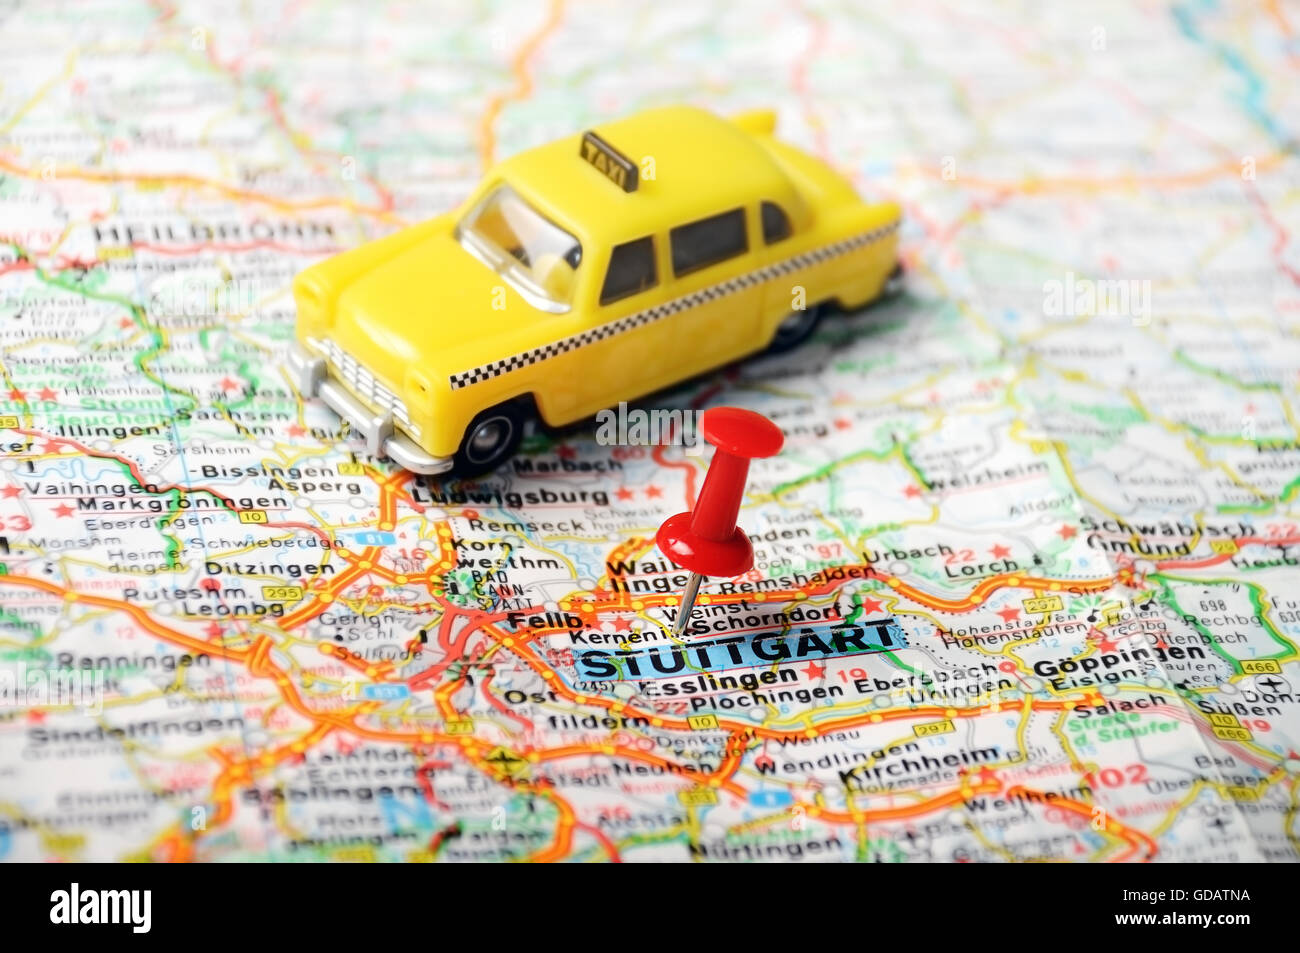 Cerca de Stuttgart mapa con clavijas roja y un taxi - concepto de viaje Foto de stock